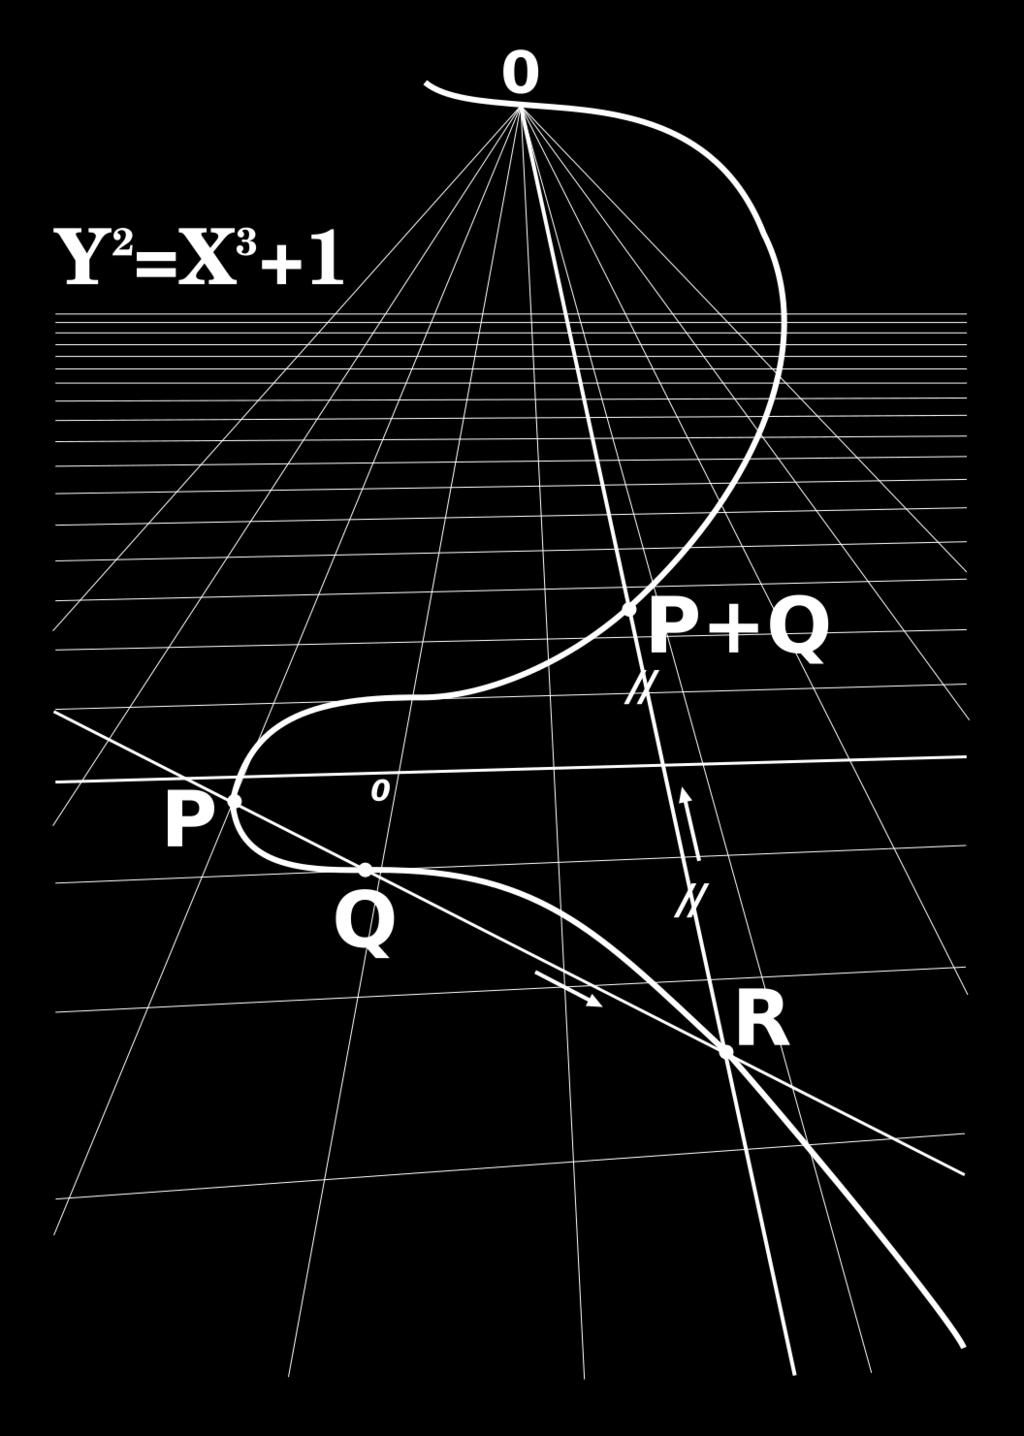 i) Für zwei verschiedene Punkte P und Q auf E(F ) legen wir zunächst eine projektive Gerade durch diese beiden Punkte (P Q). Diese Gerade schneidet E(F ) in einem weiteren Punkt R.